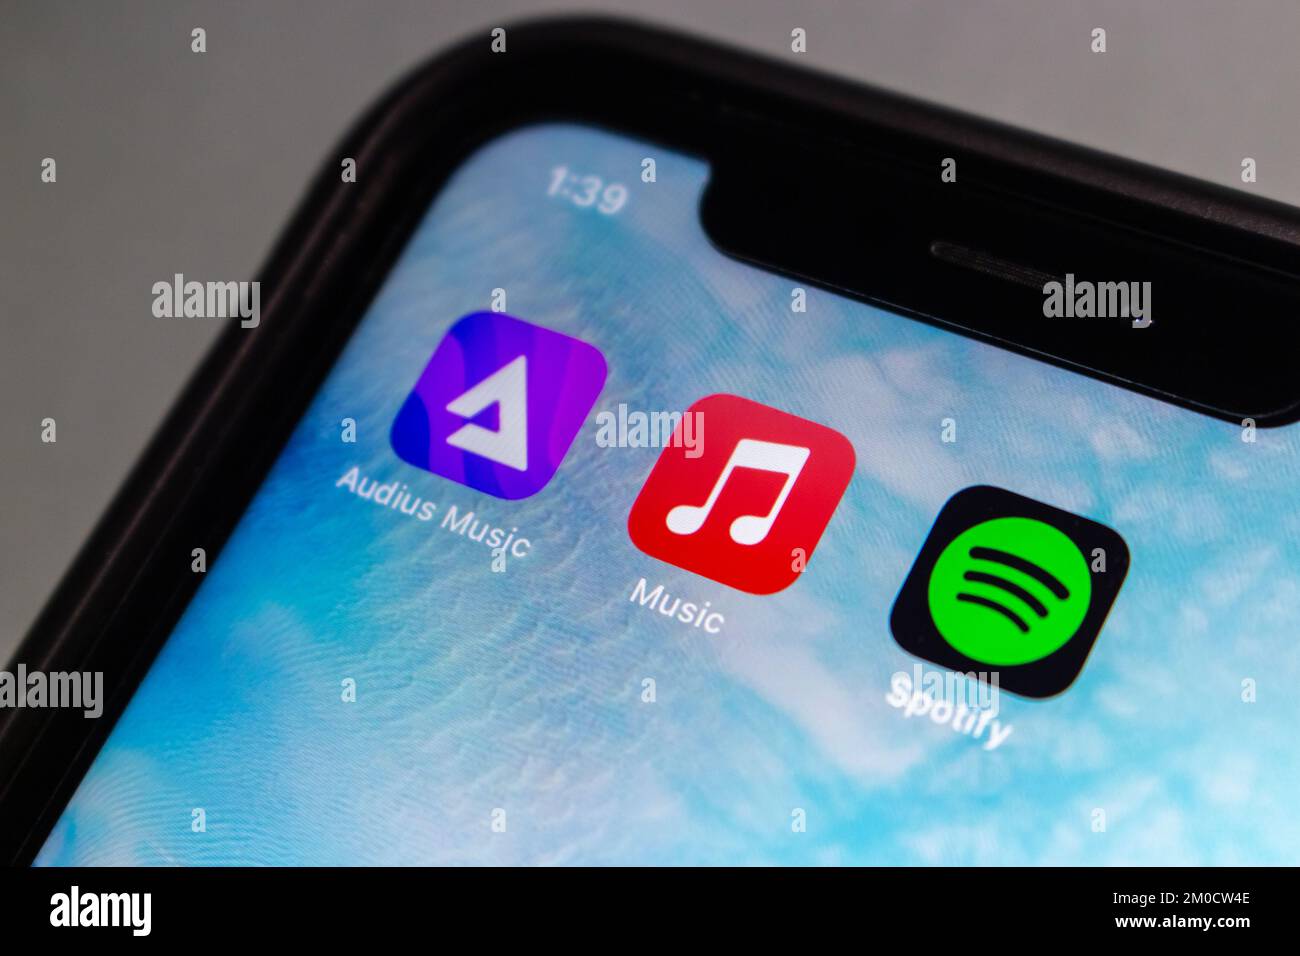 Icônes d'applications Audius Music, Apple Music, Spotify sur un iPhone.  Audius est une plate-forme de diffusion et de partage de musique basée sur  blockchain de manière décentralisée Photo Stock - Alamy